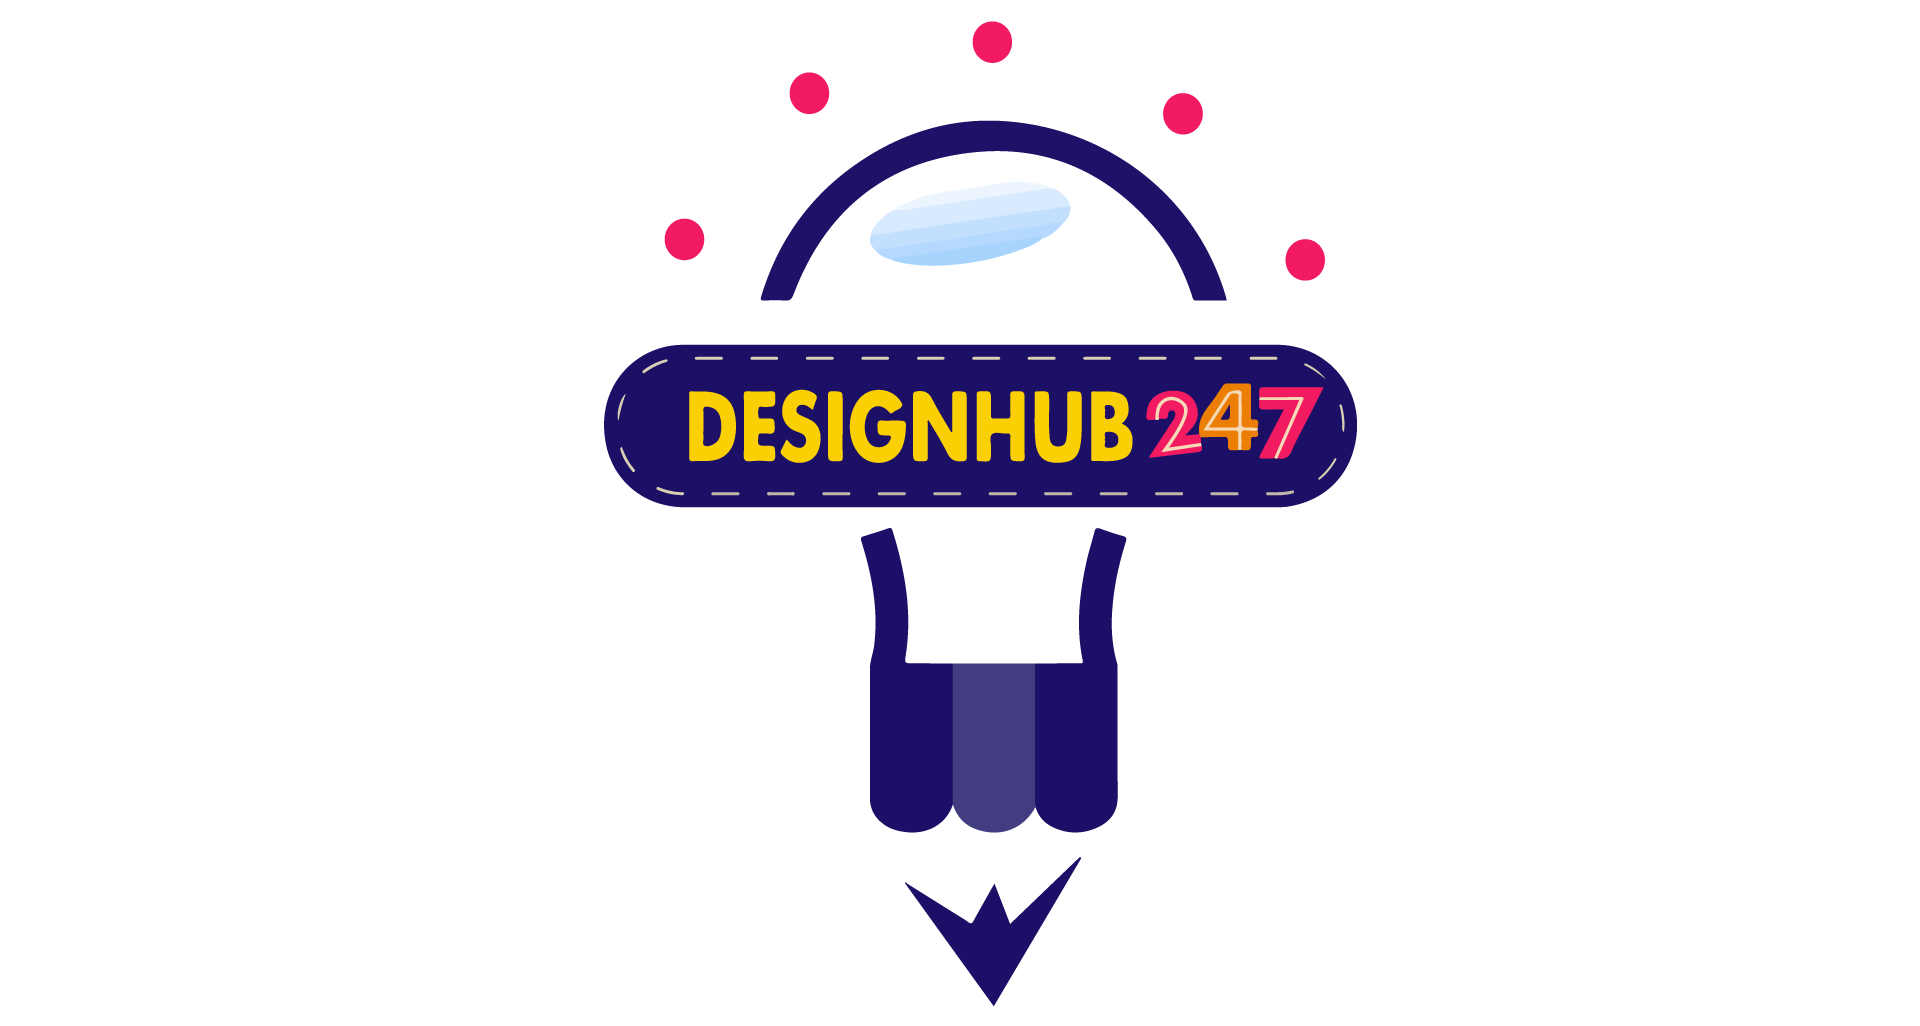 DESIGNHUB247: Web Design & Digital Marketing Agency in Lagos